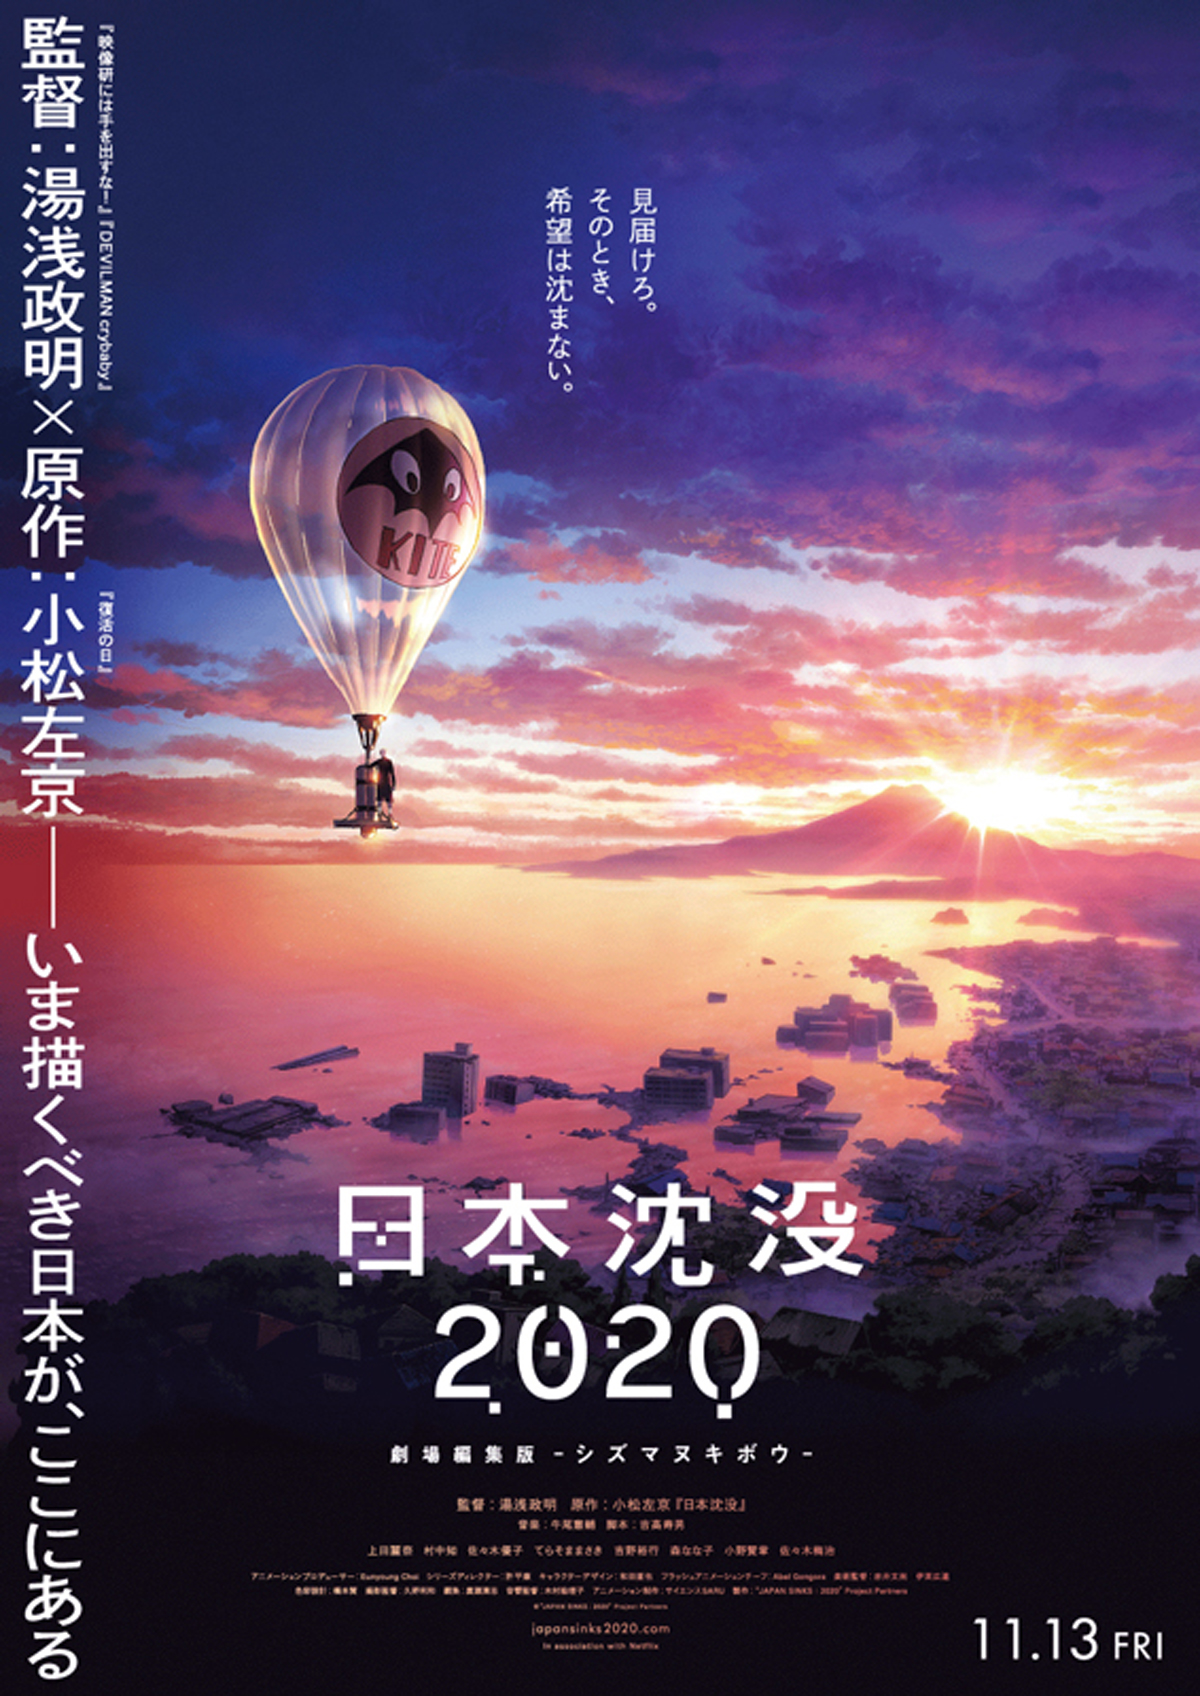 日本沈没2020 劇場編集版 -シズマヌキボウ-の画像